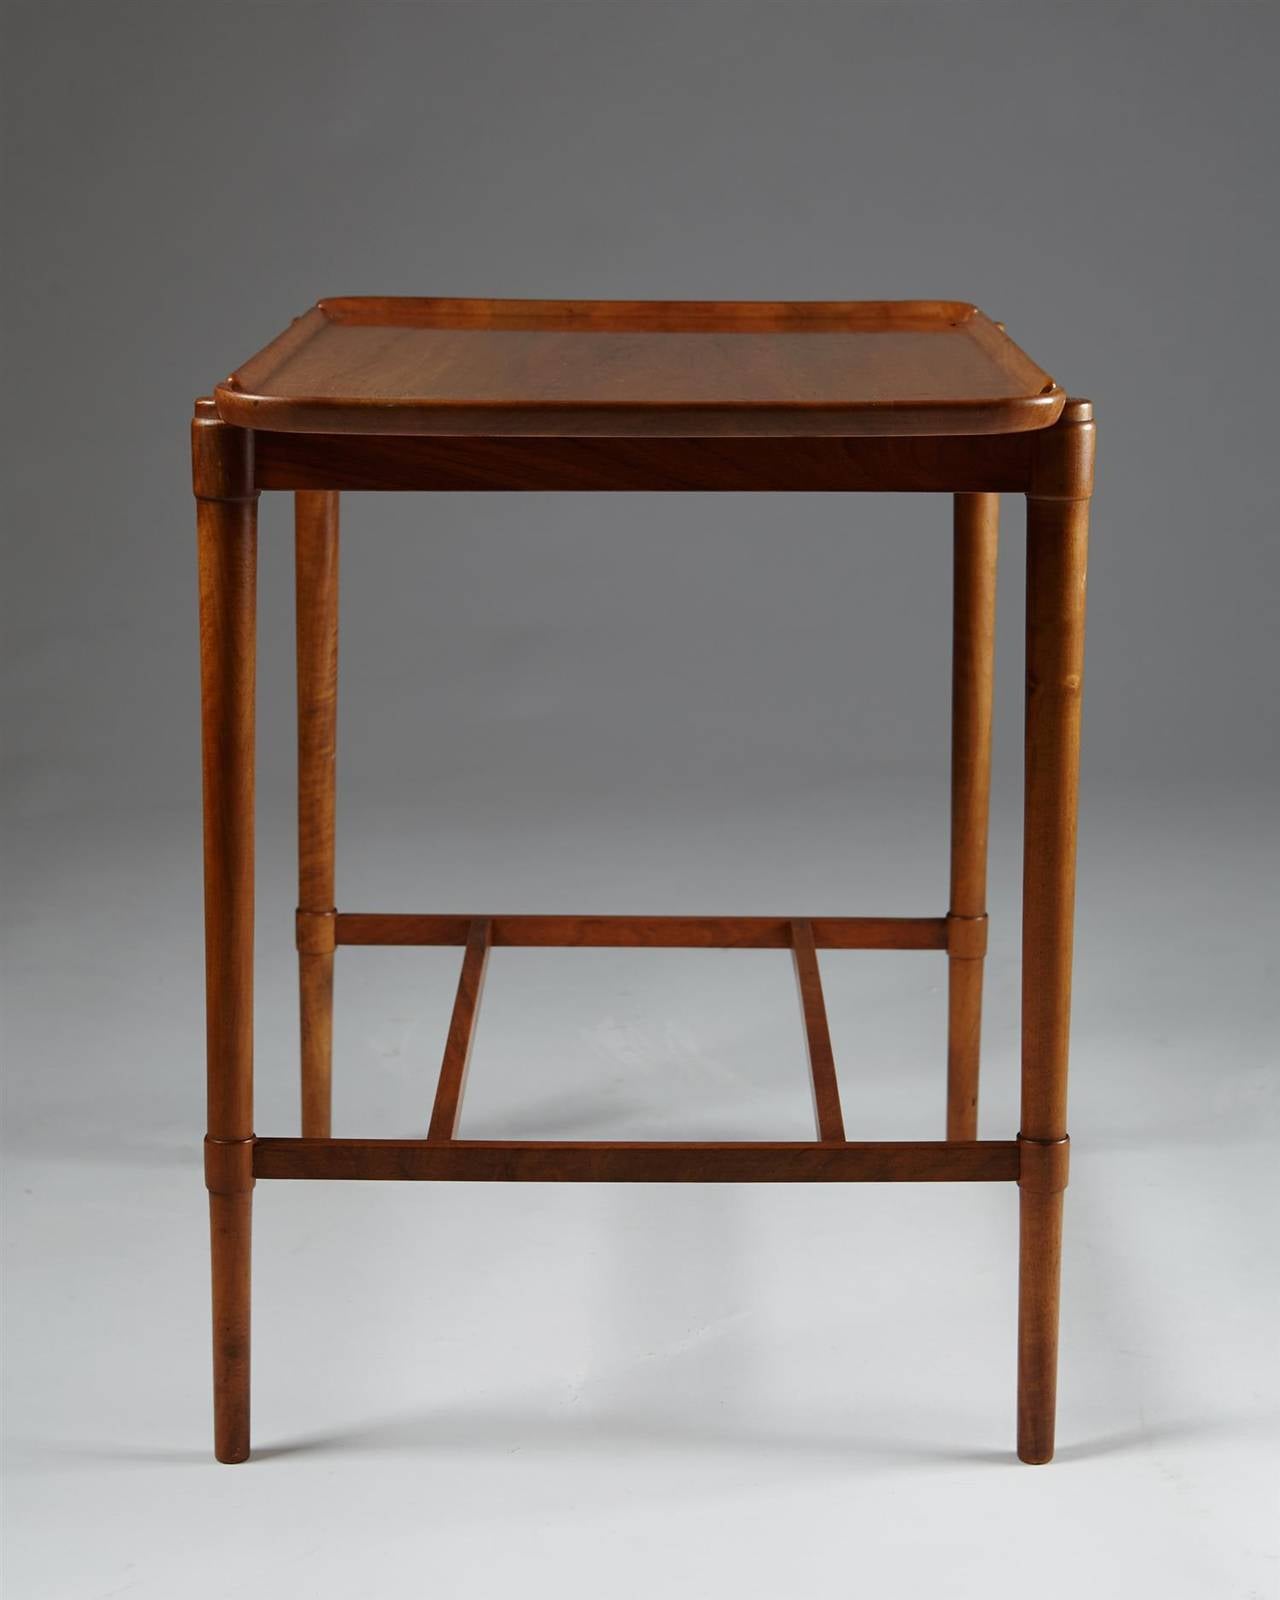 Danish Occasional Table Designed by Peder Hvidt for Fritz Hansen, Denmark, 1943